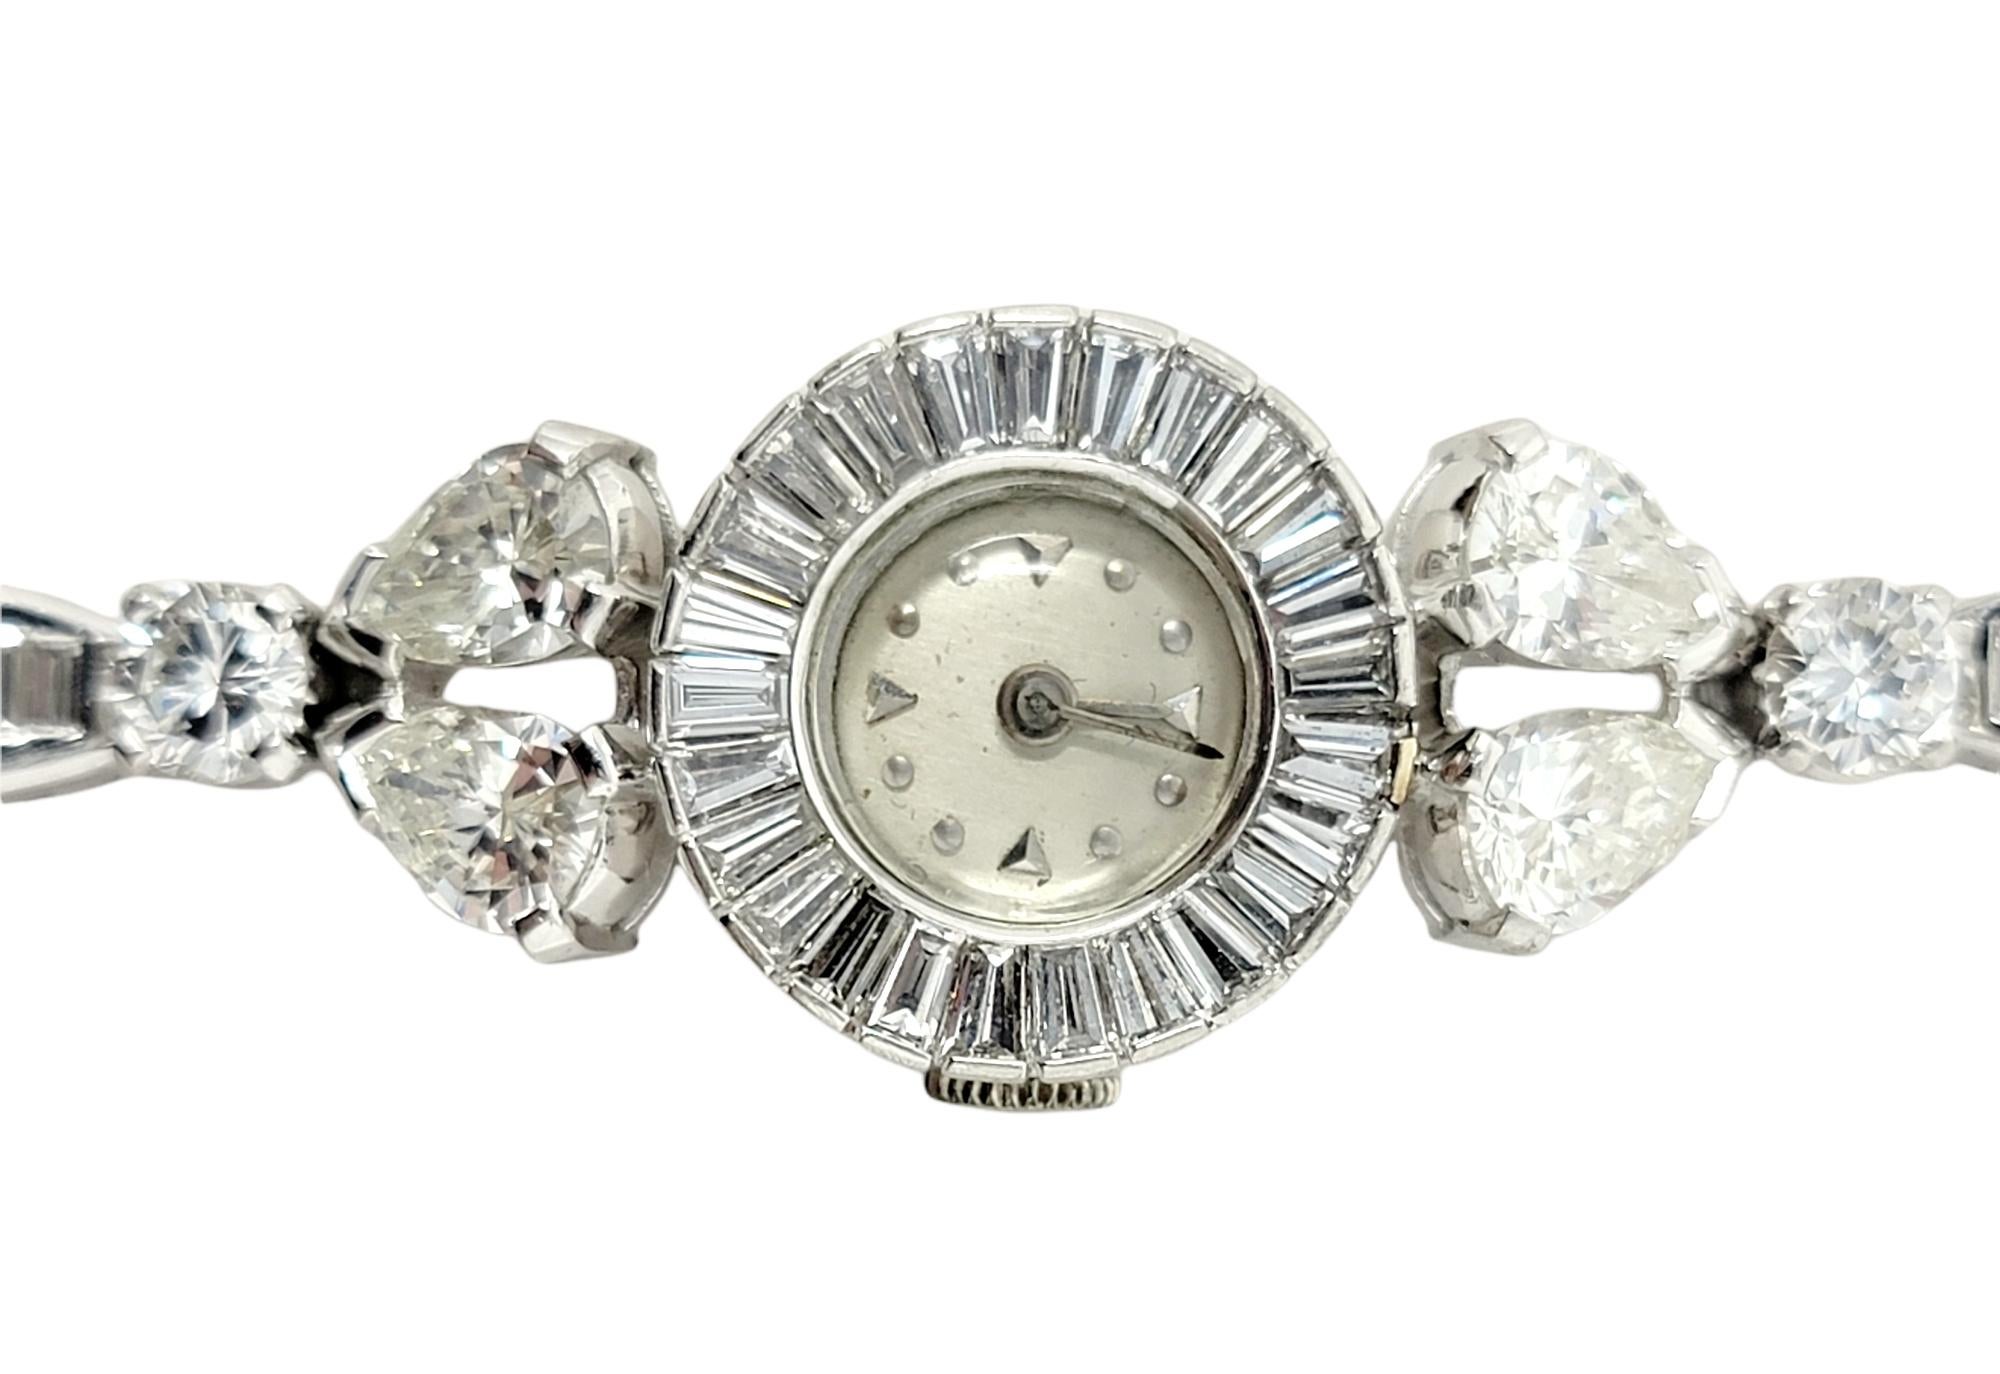 Exquise montre-bracelet vintage ornée de 9,23 carats de diamants naturels étincelants. Doté de maillons en platine souples et allongés, ce bracelet scintillant enveloppe délicatement le poignet, mettant en valeur les 84 diamants étincelants qui